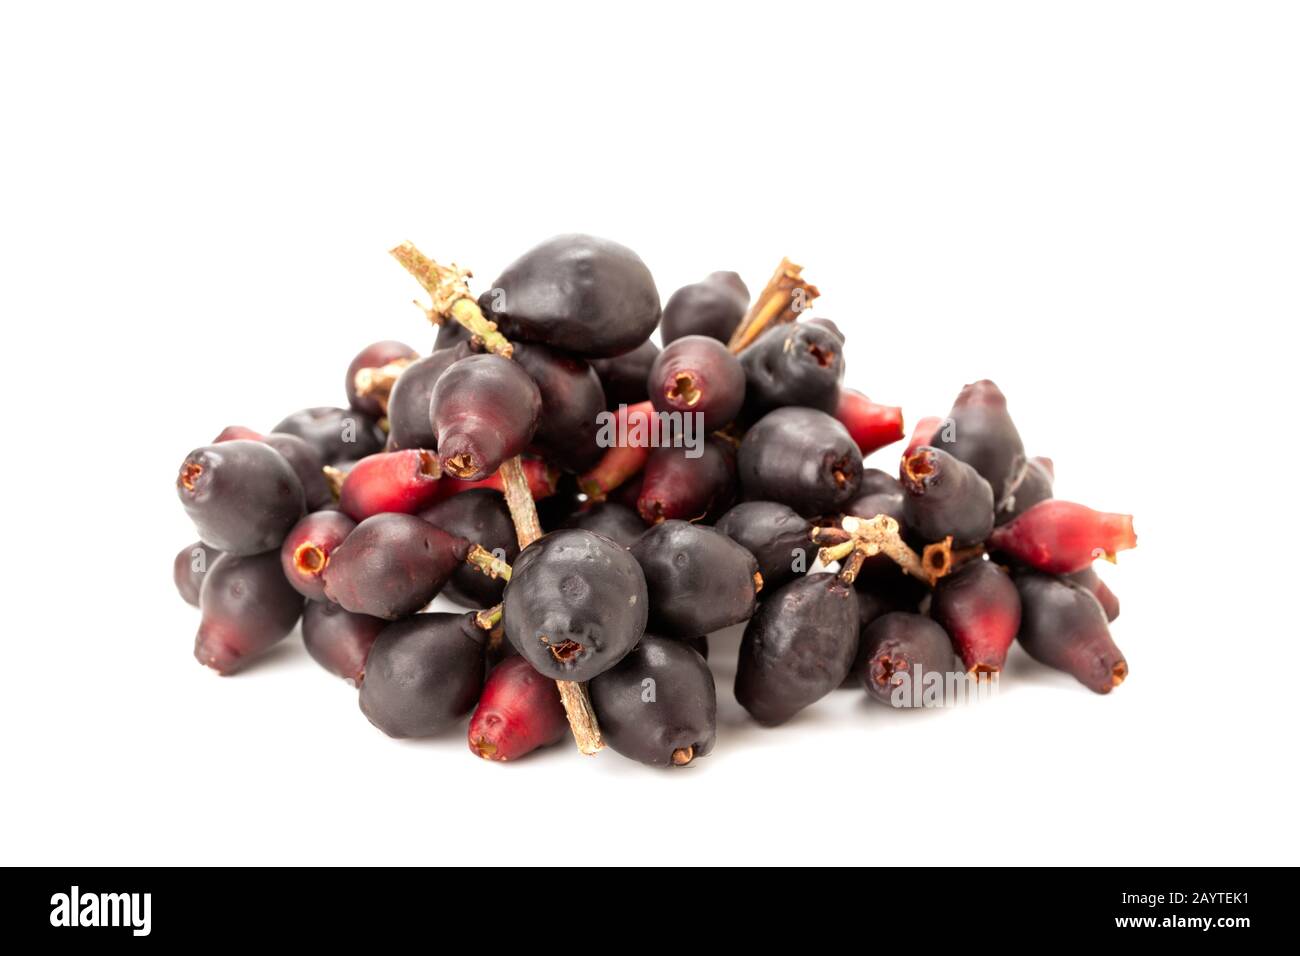 Syzygium cumini, black plum, jamun or Syzygium cumini isolated on white background Stock Photo